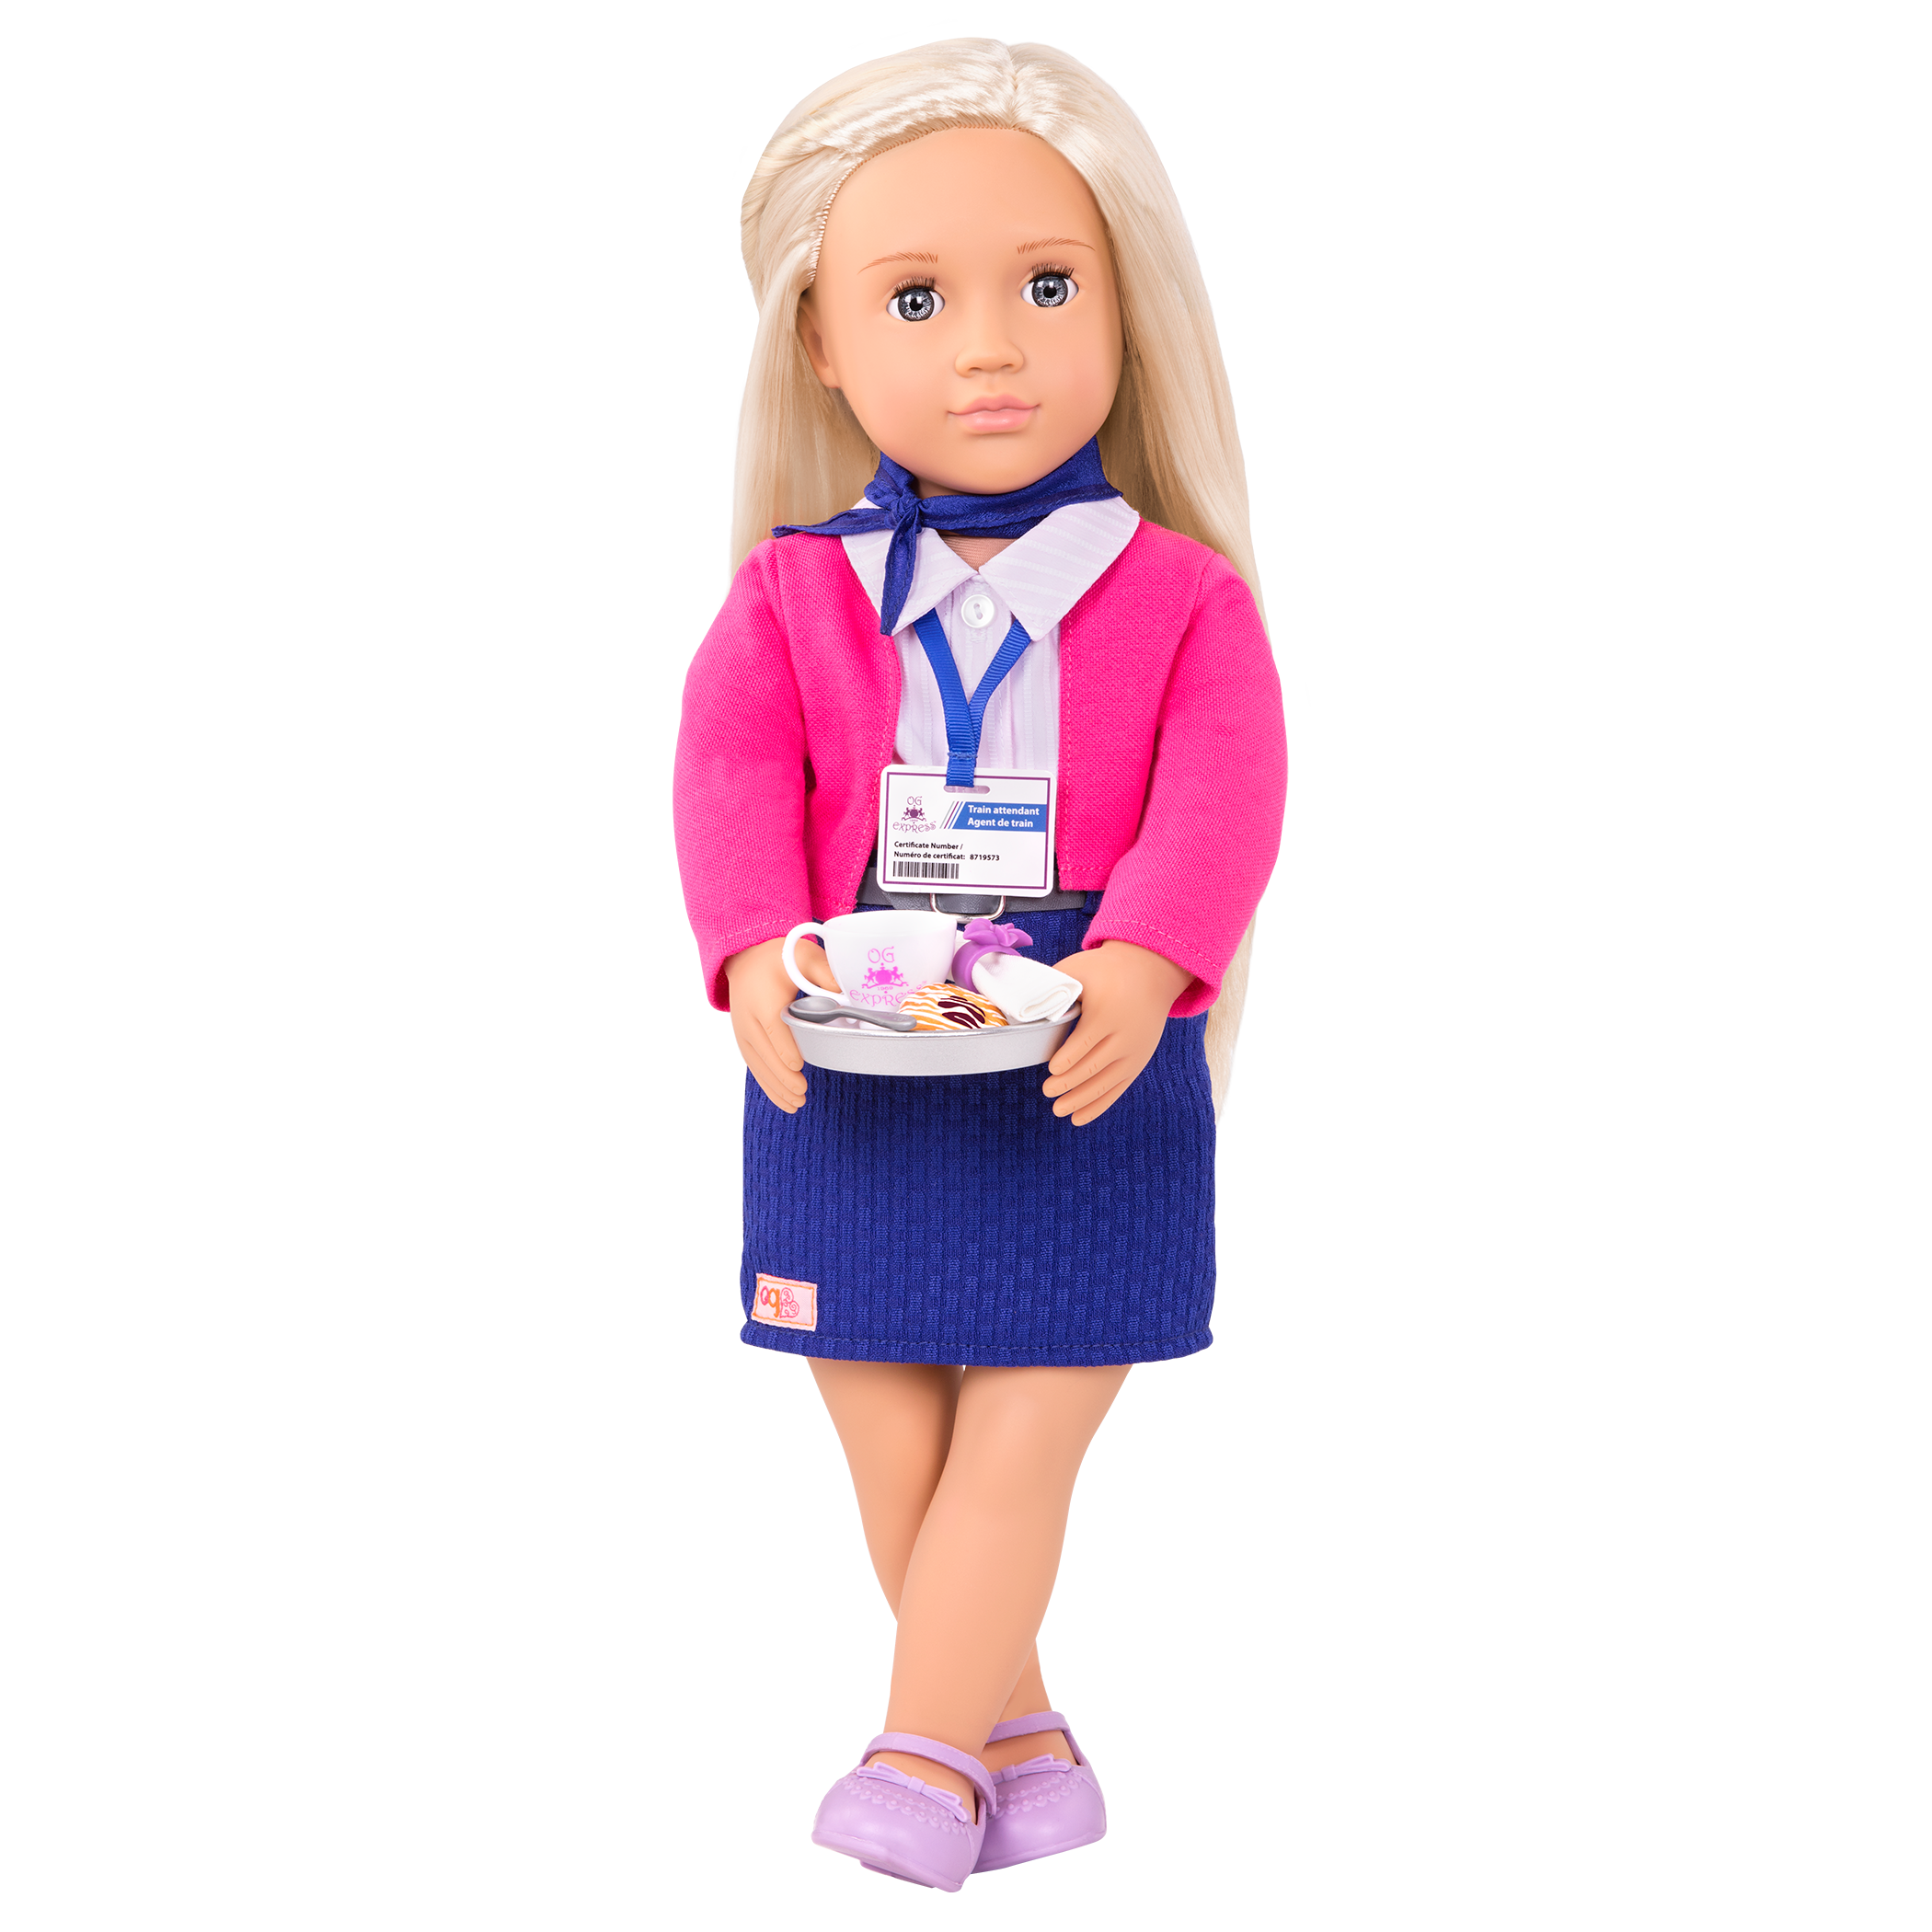 Flight attendant uniform for 18-inch doll